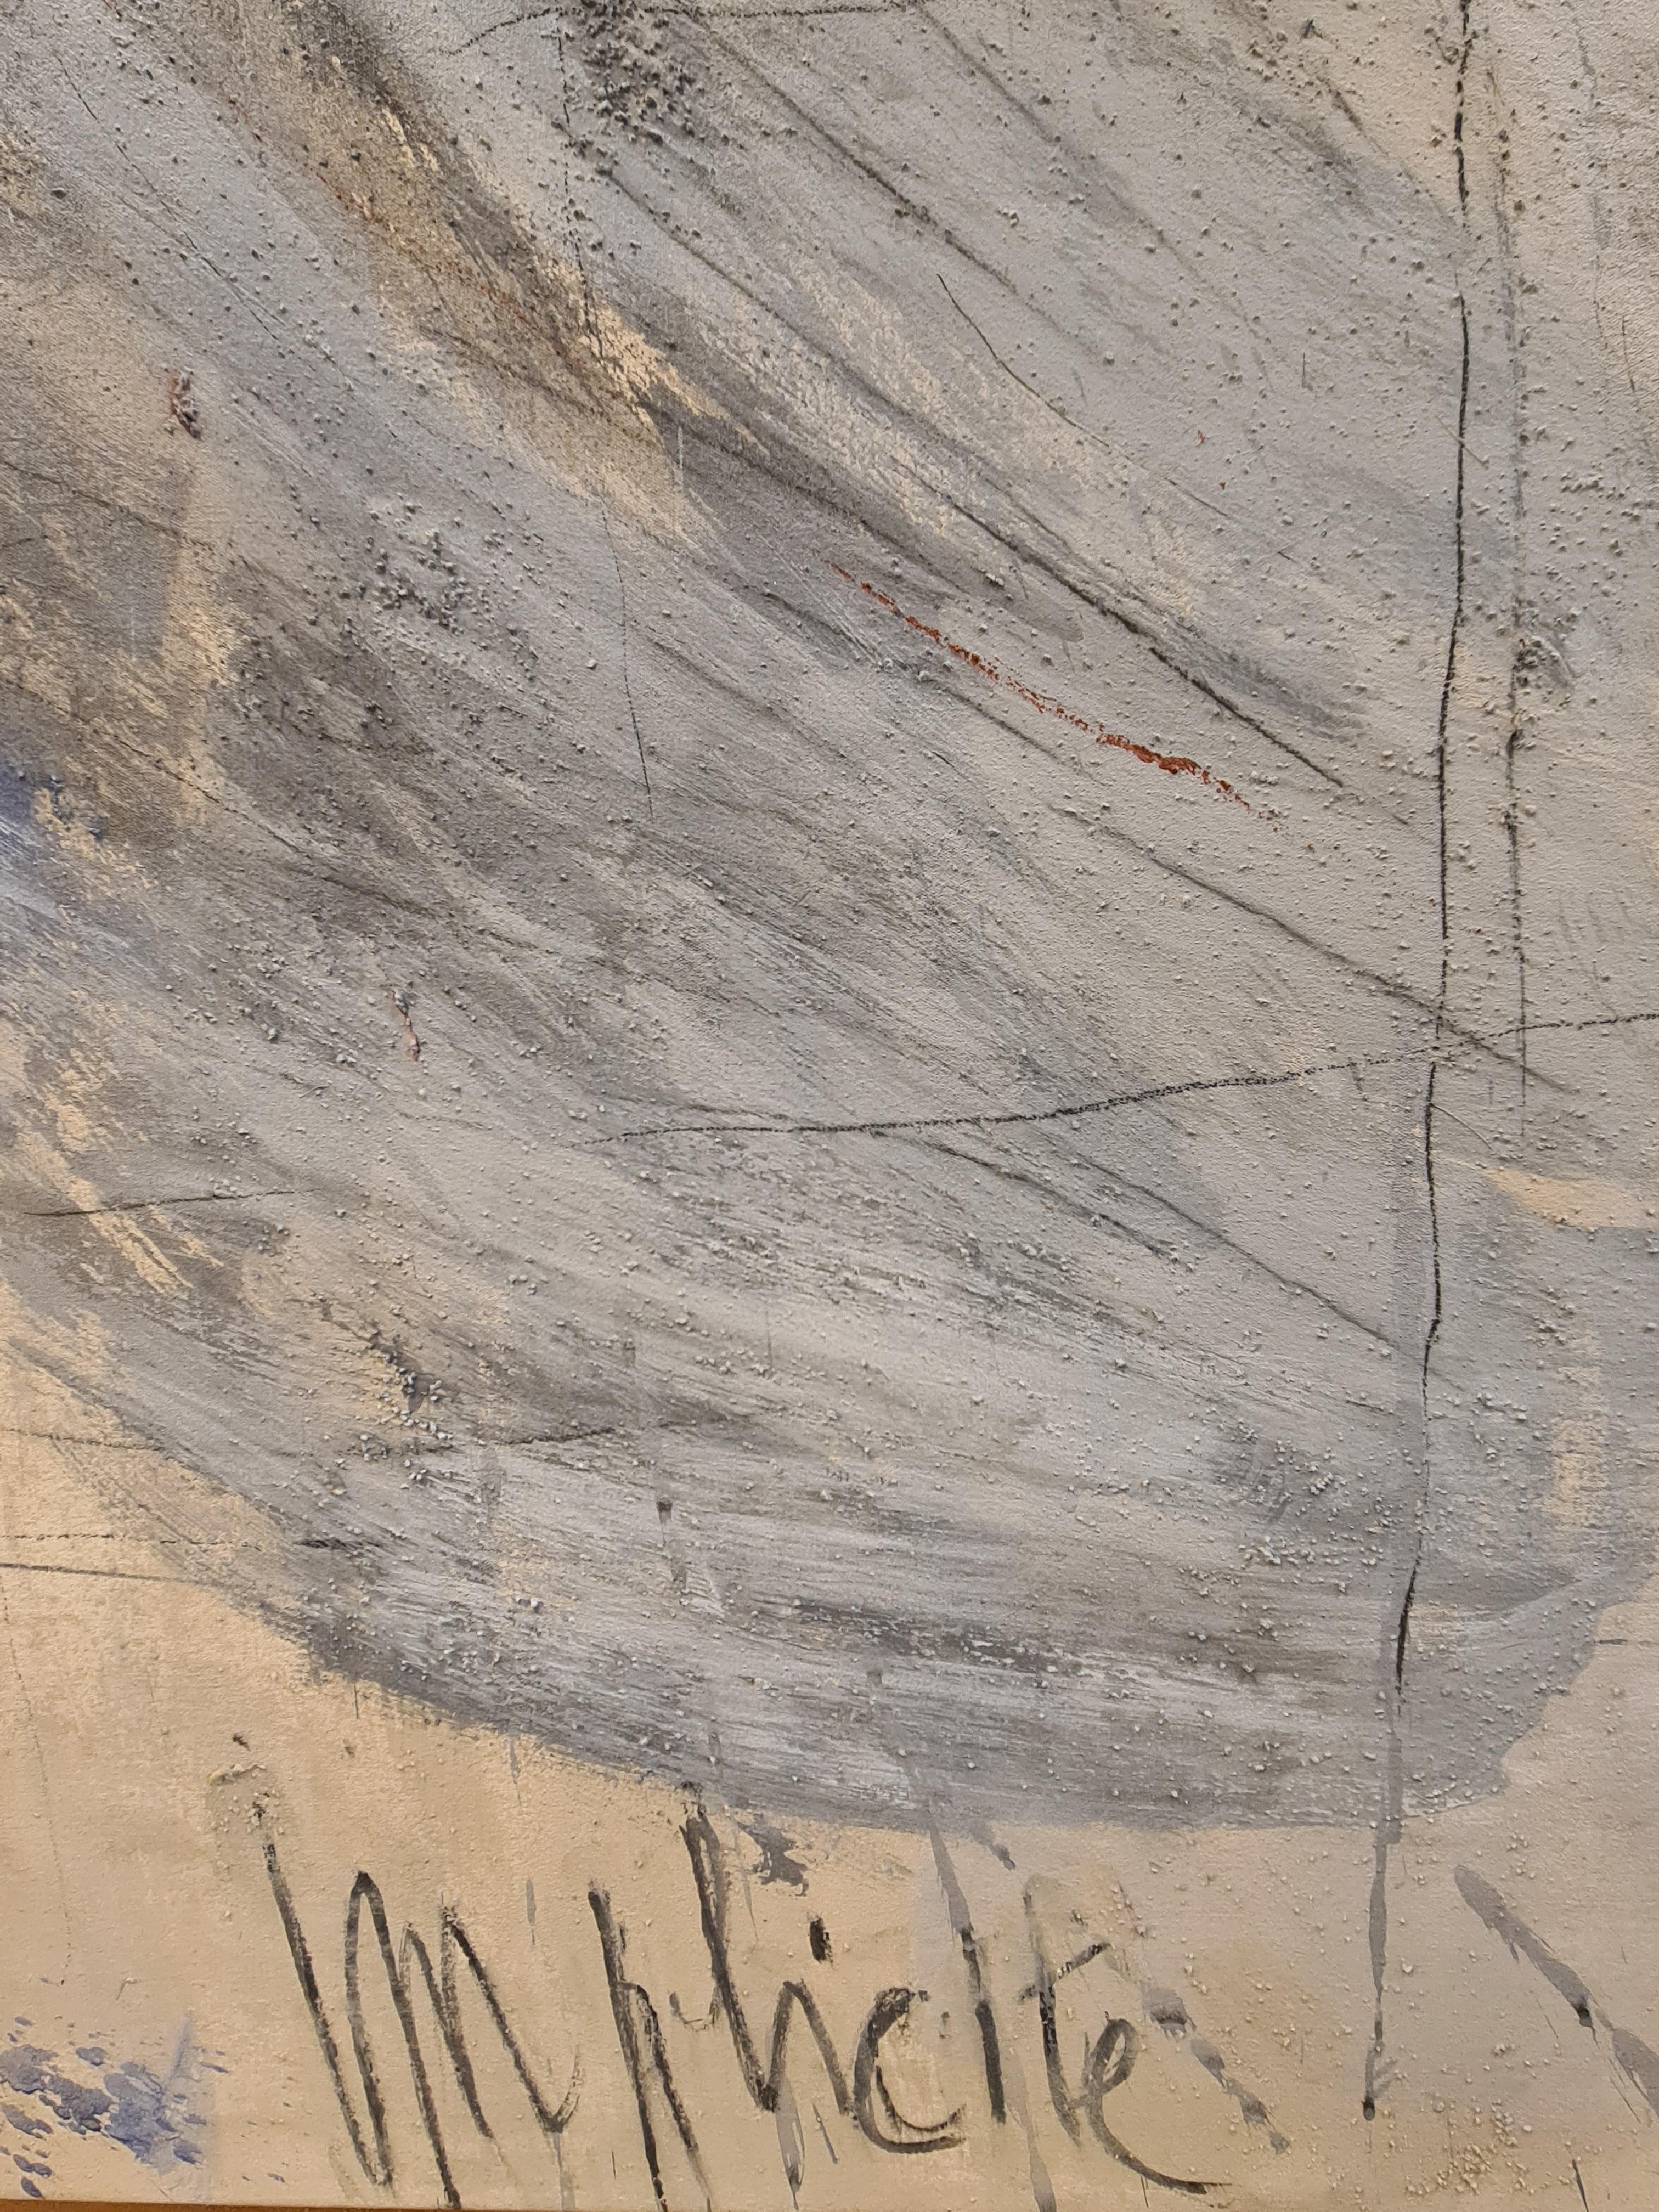 Implicite“, großformatiges abstrakt-expressionistisches Ölgemälde, Acryl und Sand auf Leinwand (Abstrakter Impressionismus), Painting, von Christian Manoury